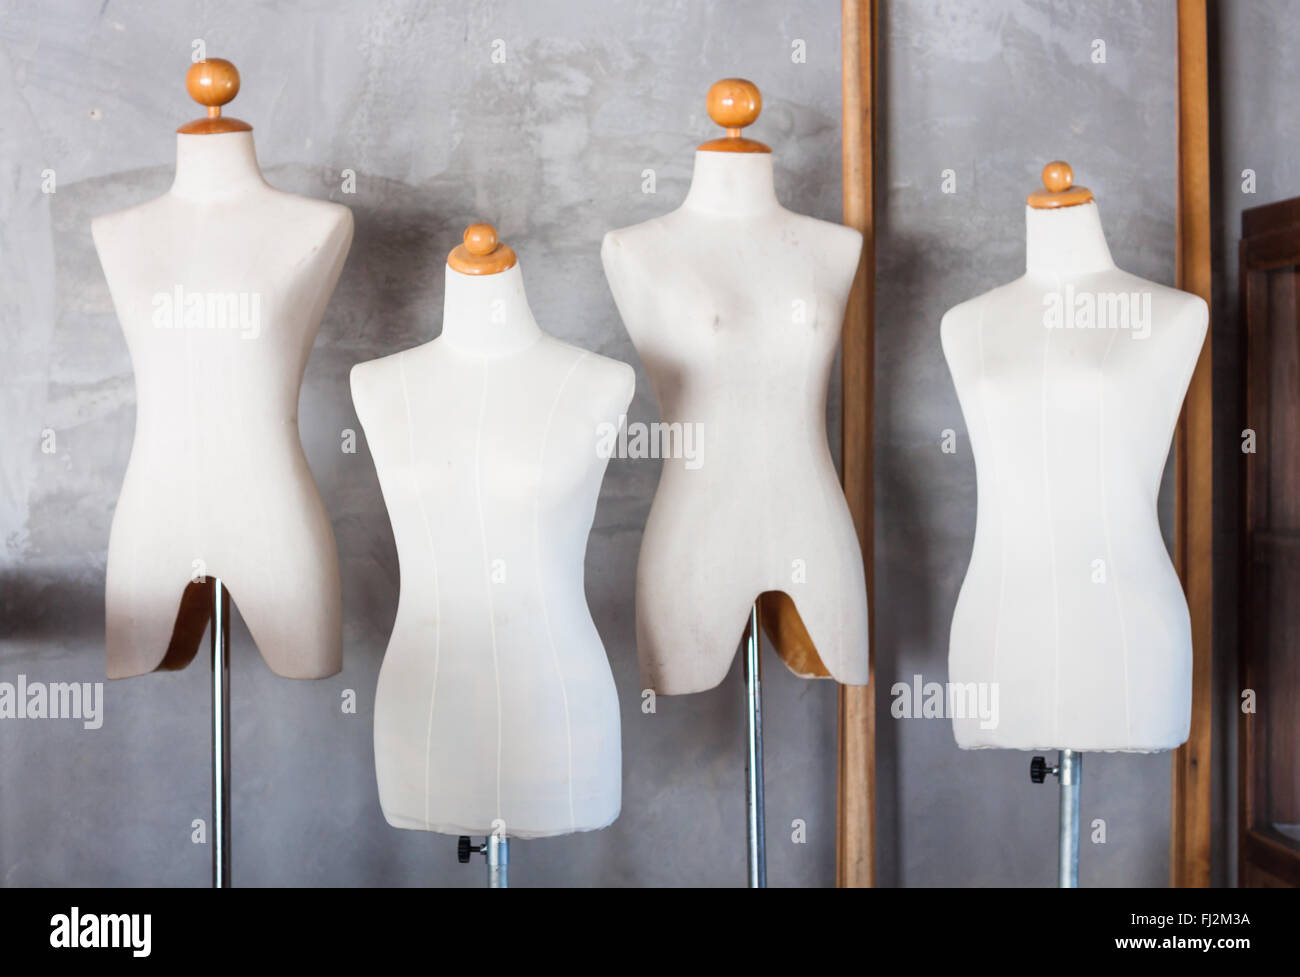 Tailleurs mannequin en salle de stockage, stock photo Banque D'Images